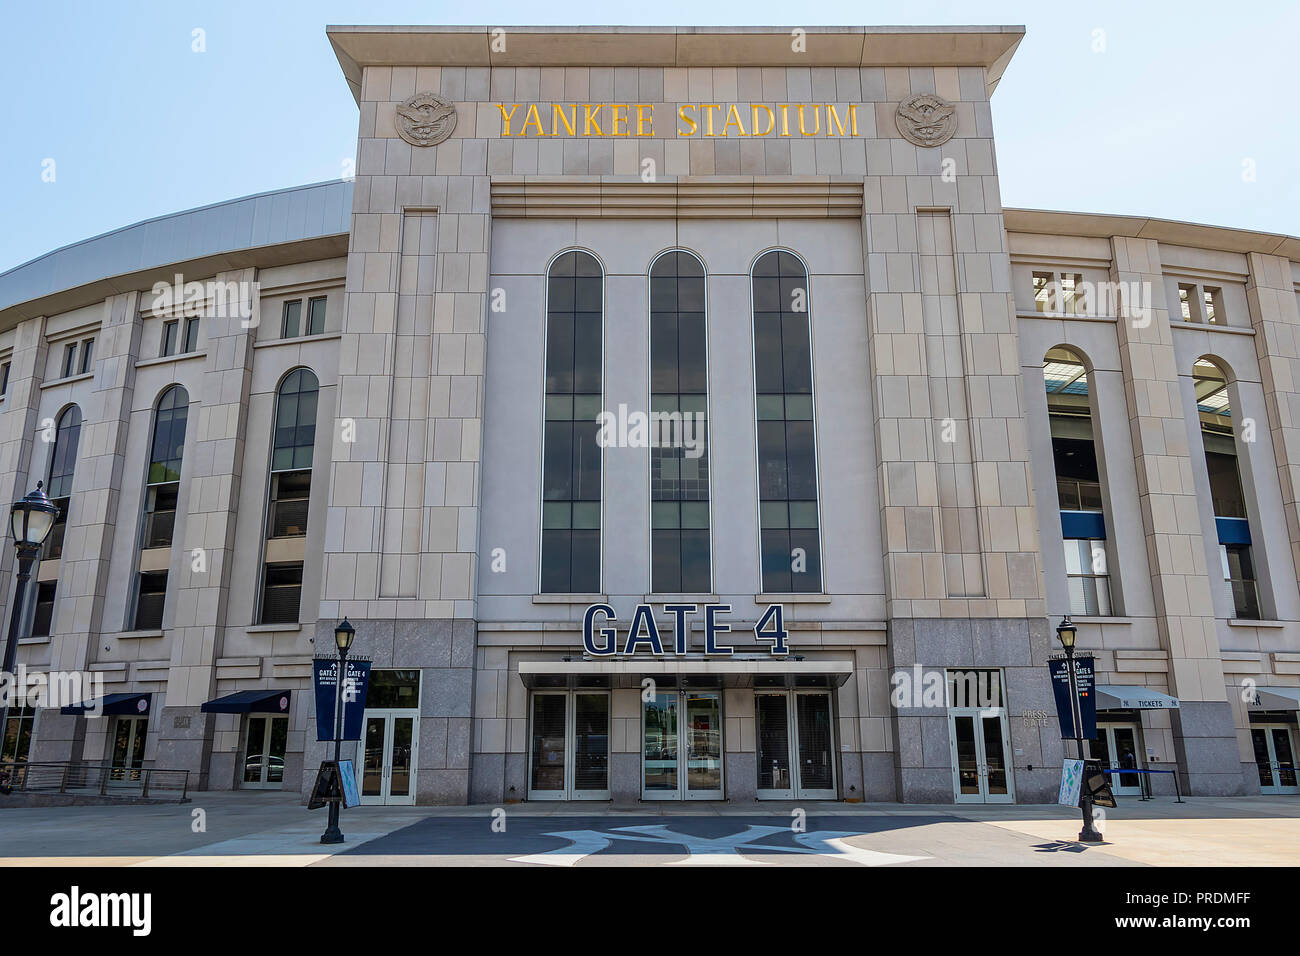 La ville de New York, USA - 10 juin 2017 : point de vue extérieur Yankee Stadium dans le Bronx Banque D'Images